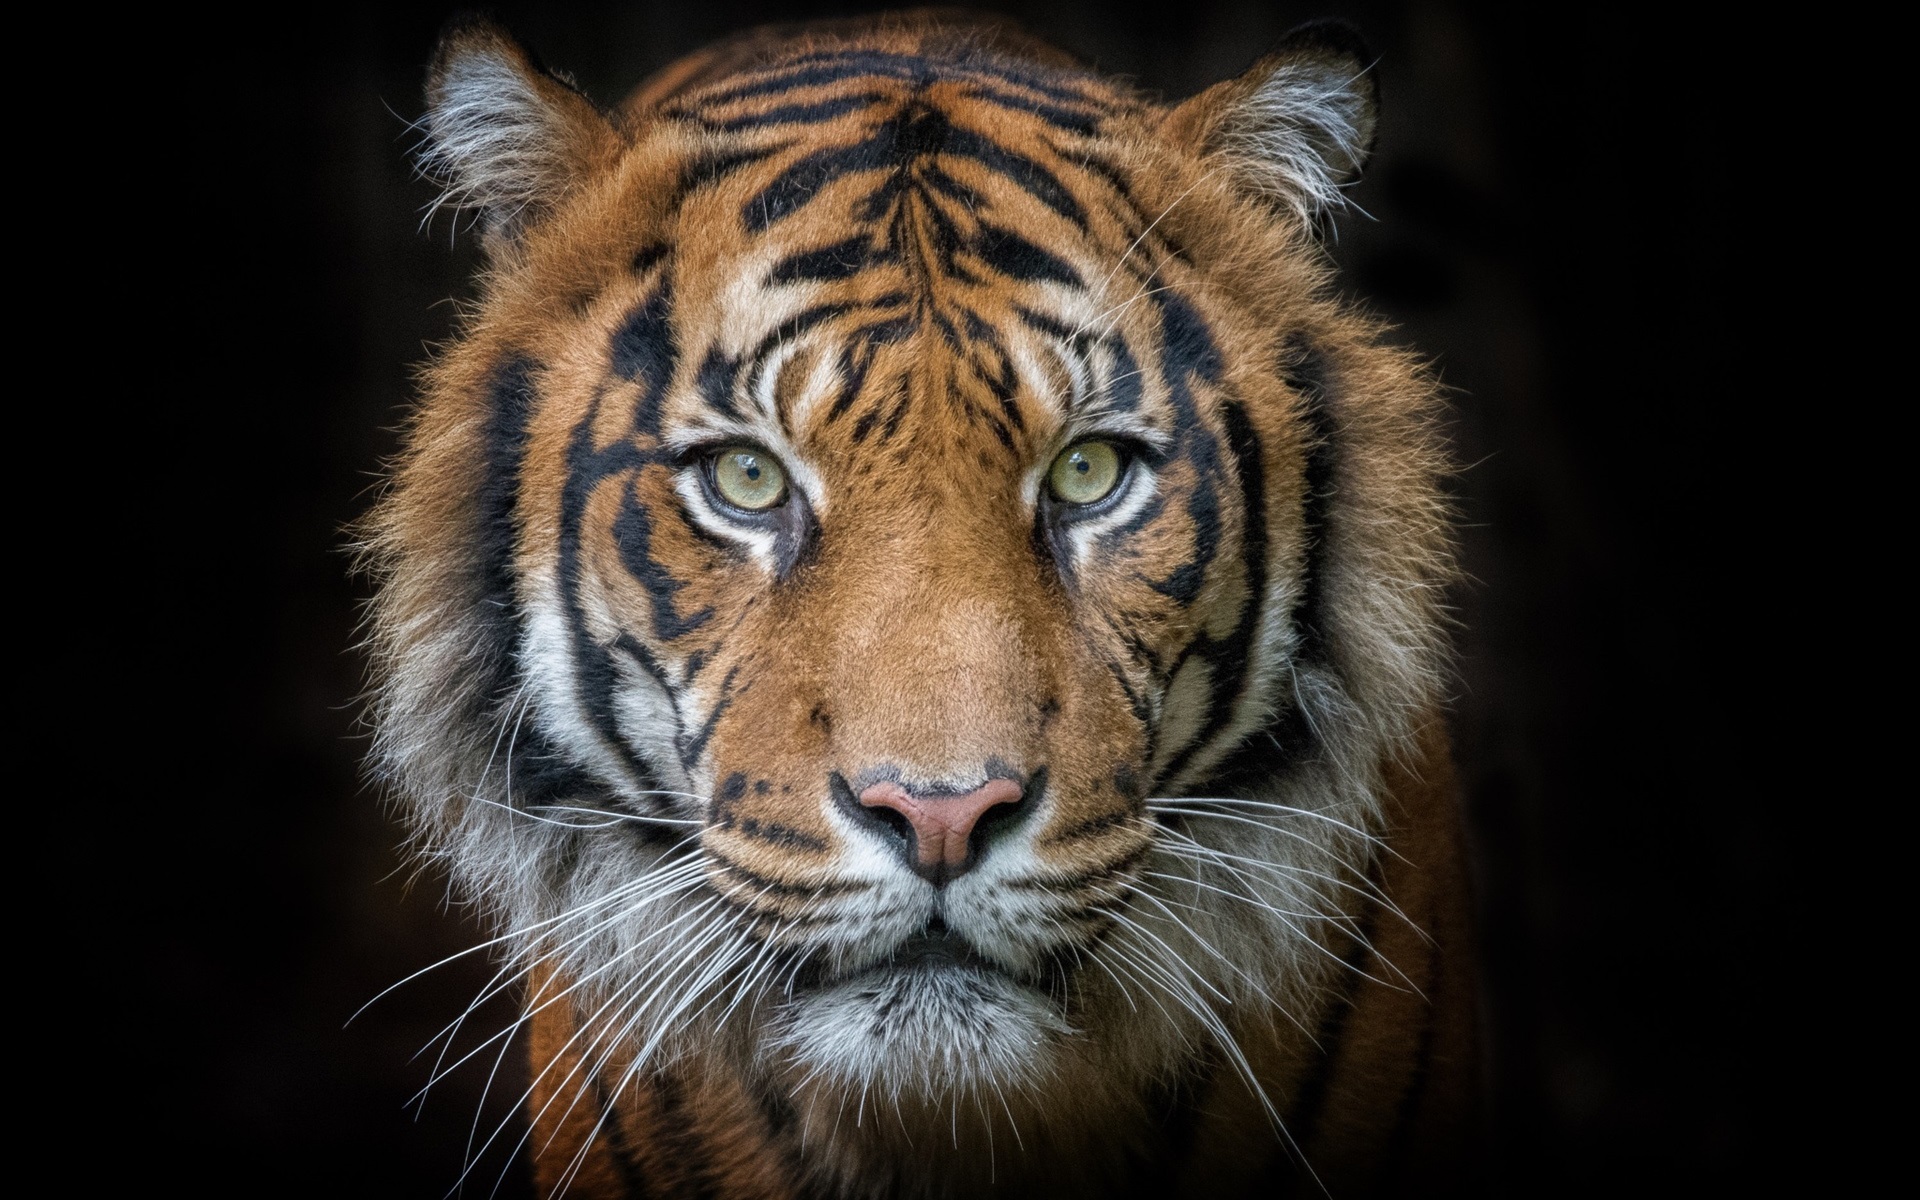 tigre tapete,tiger,tierwelt,landtier,bengalischer tiger,schnurrhaare